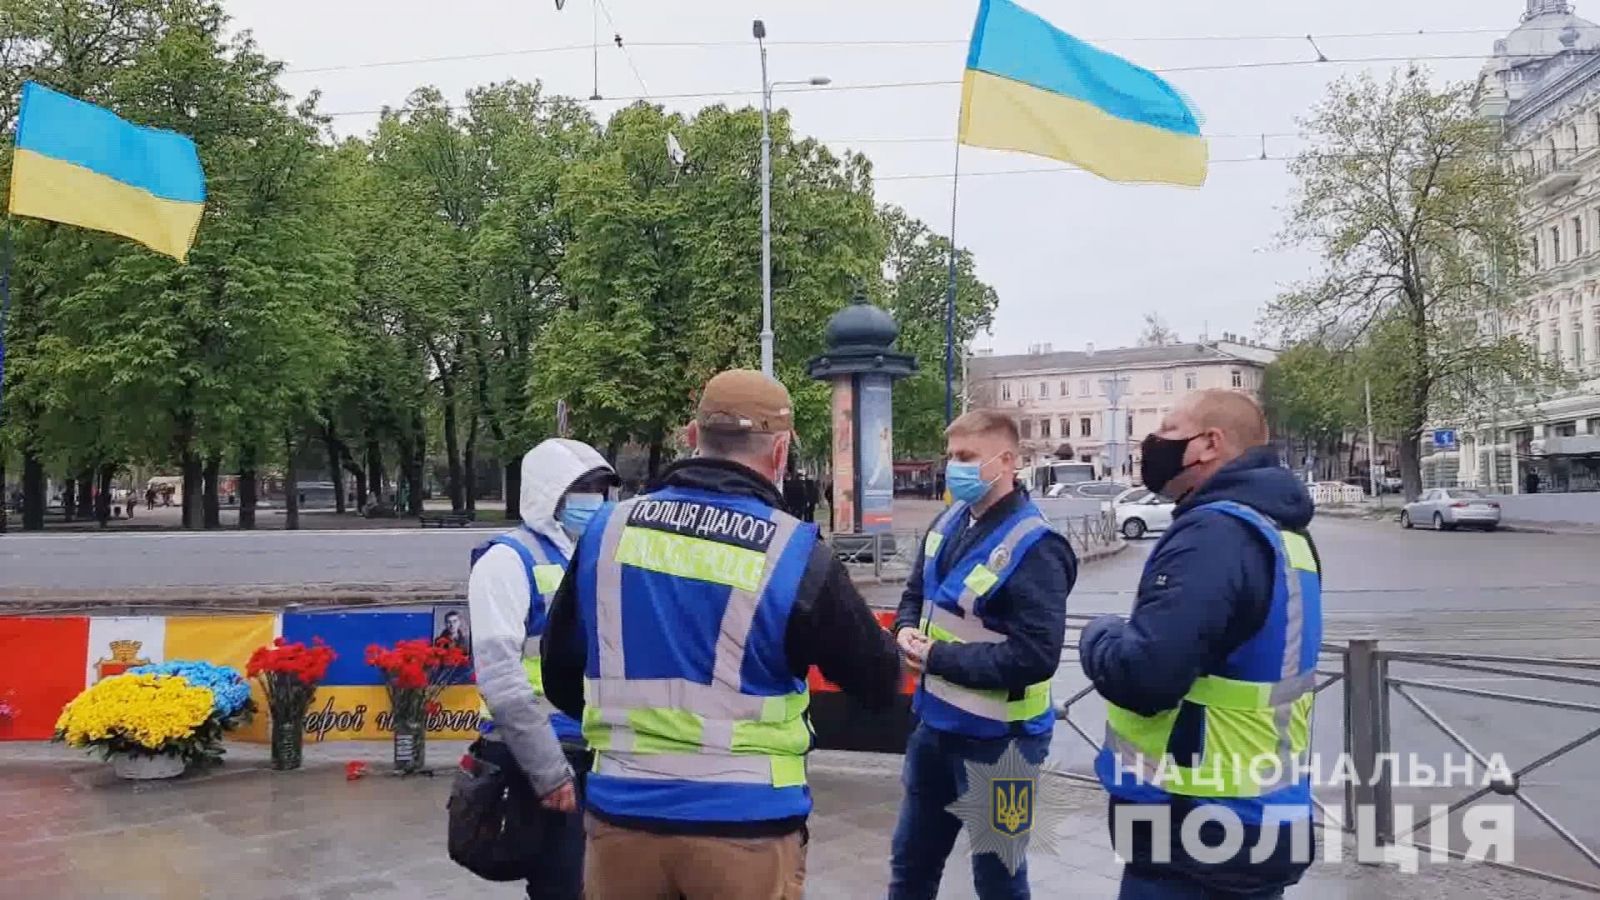 Годовщина событий 2 мая в Одессе — полиция окружила Куликово поле, фото — Нацполиция